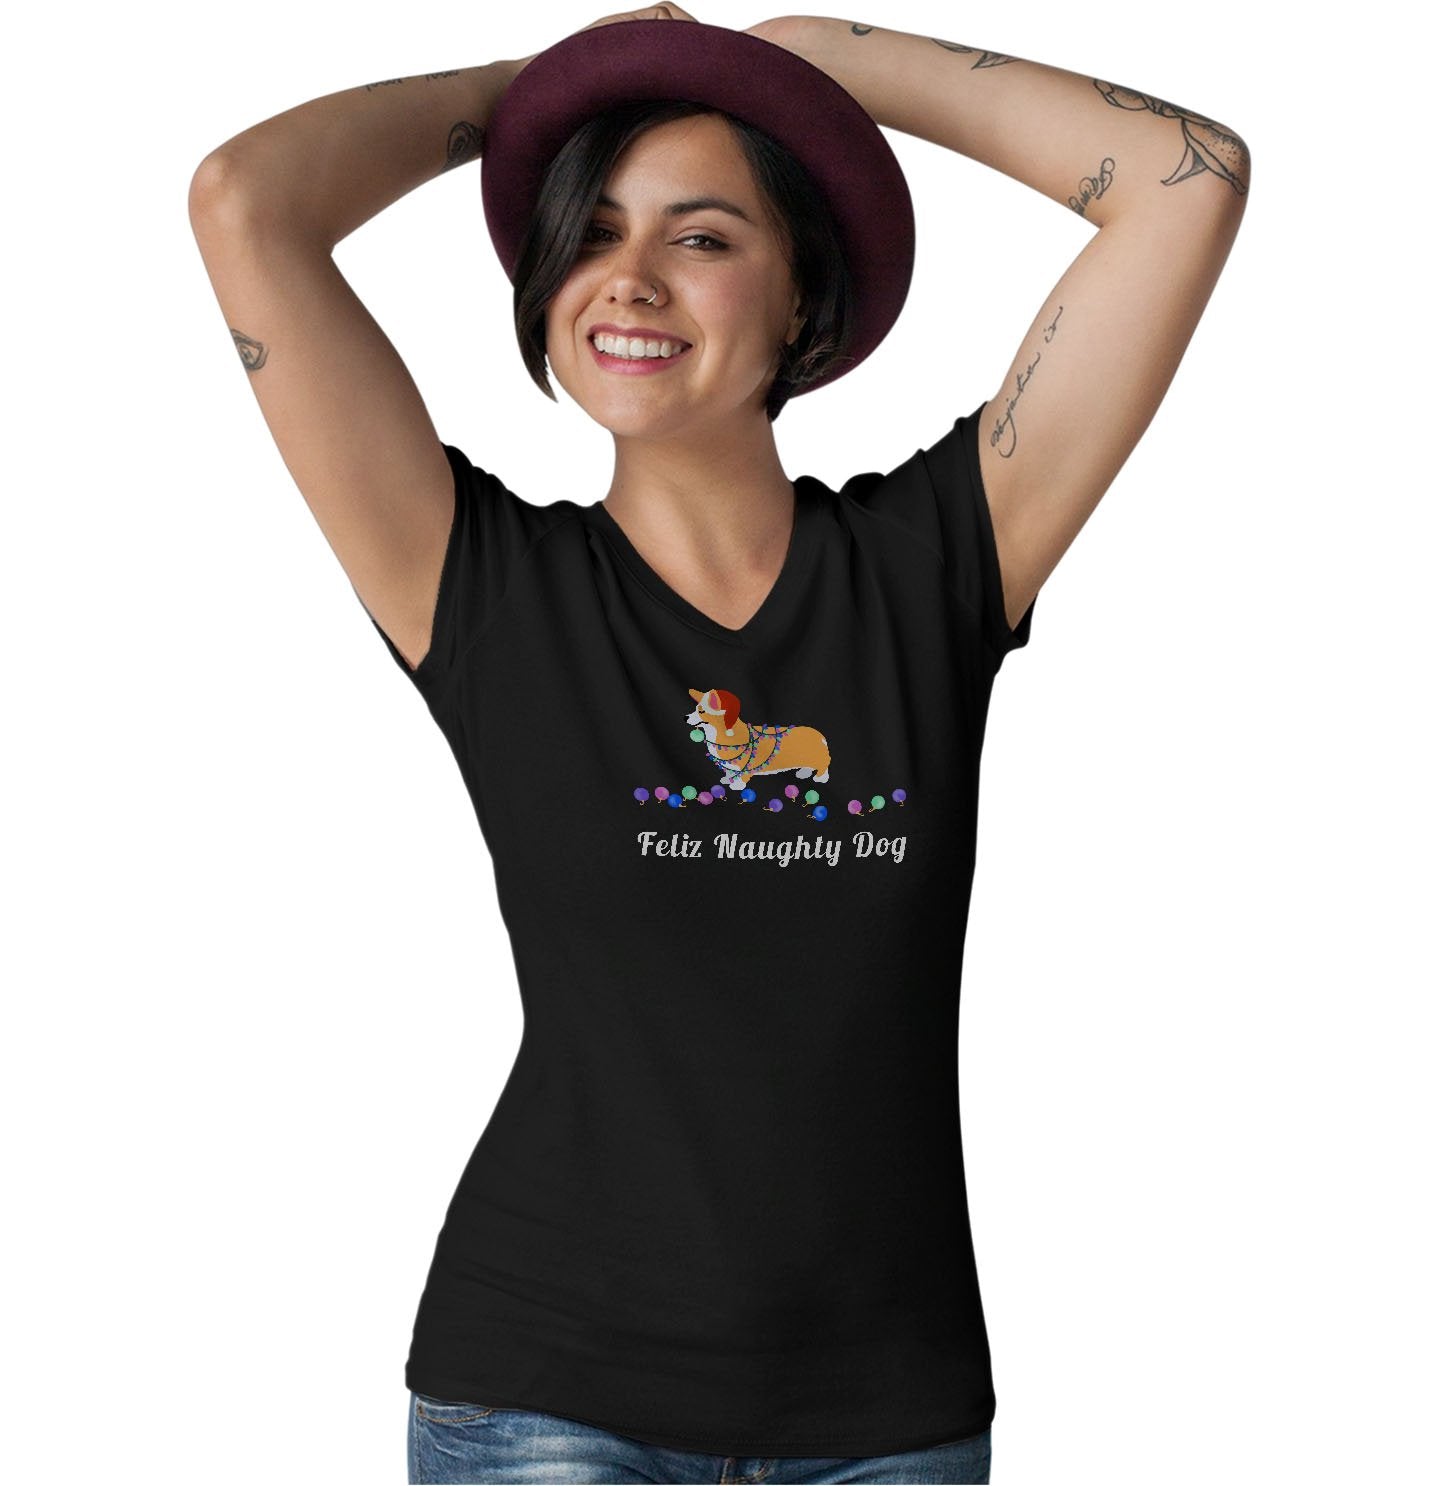 Feliz Naughty Dog Corgi - Women's V-Neck T-Shirt